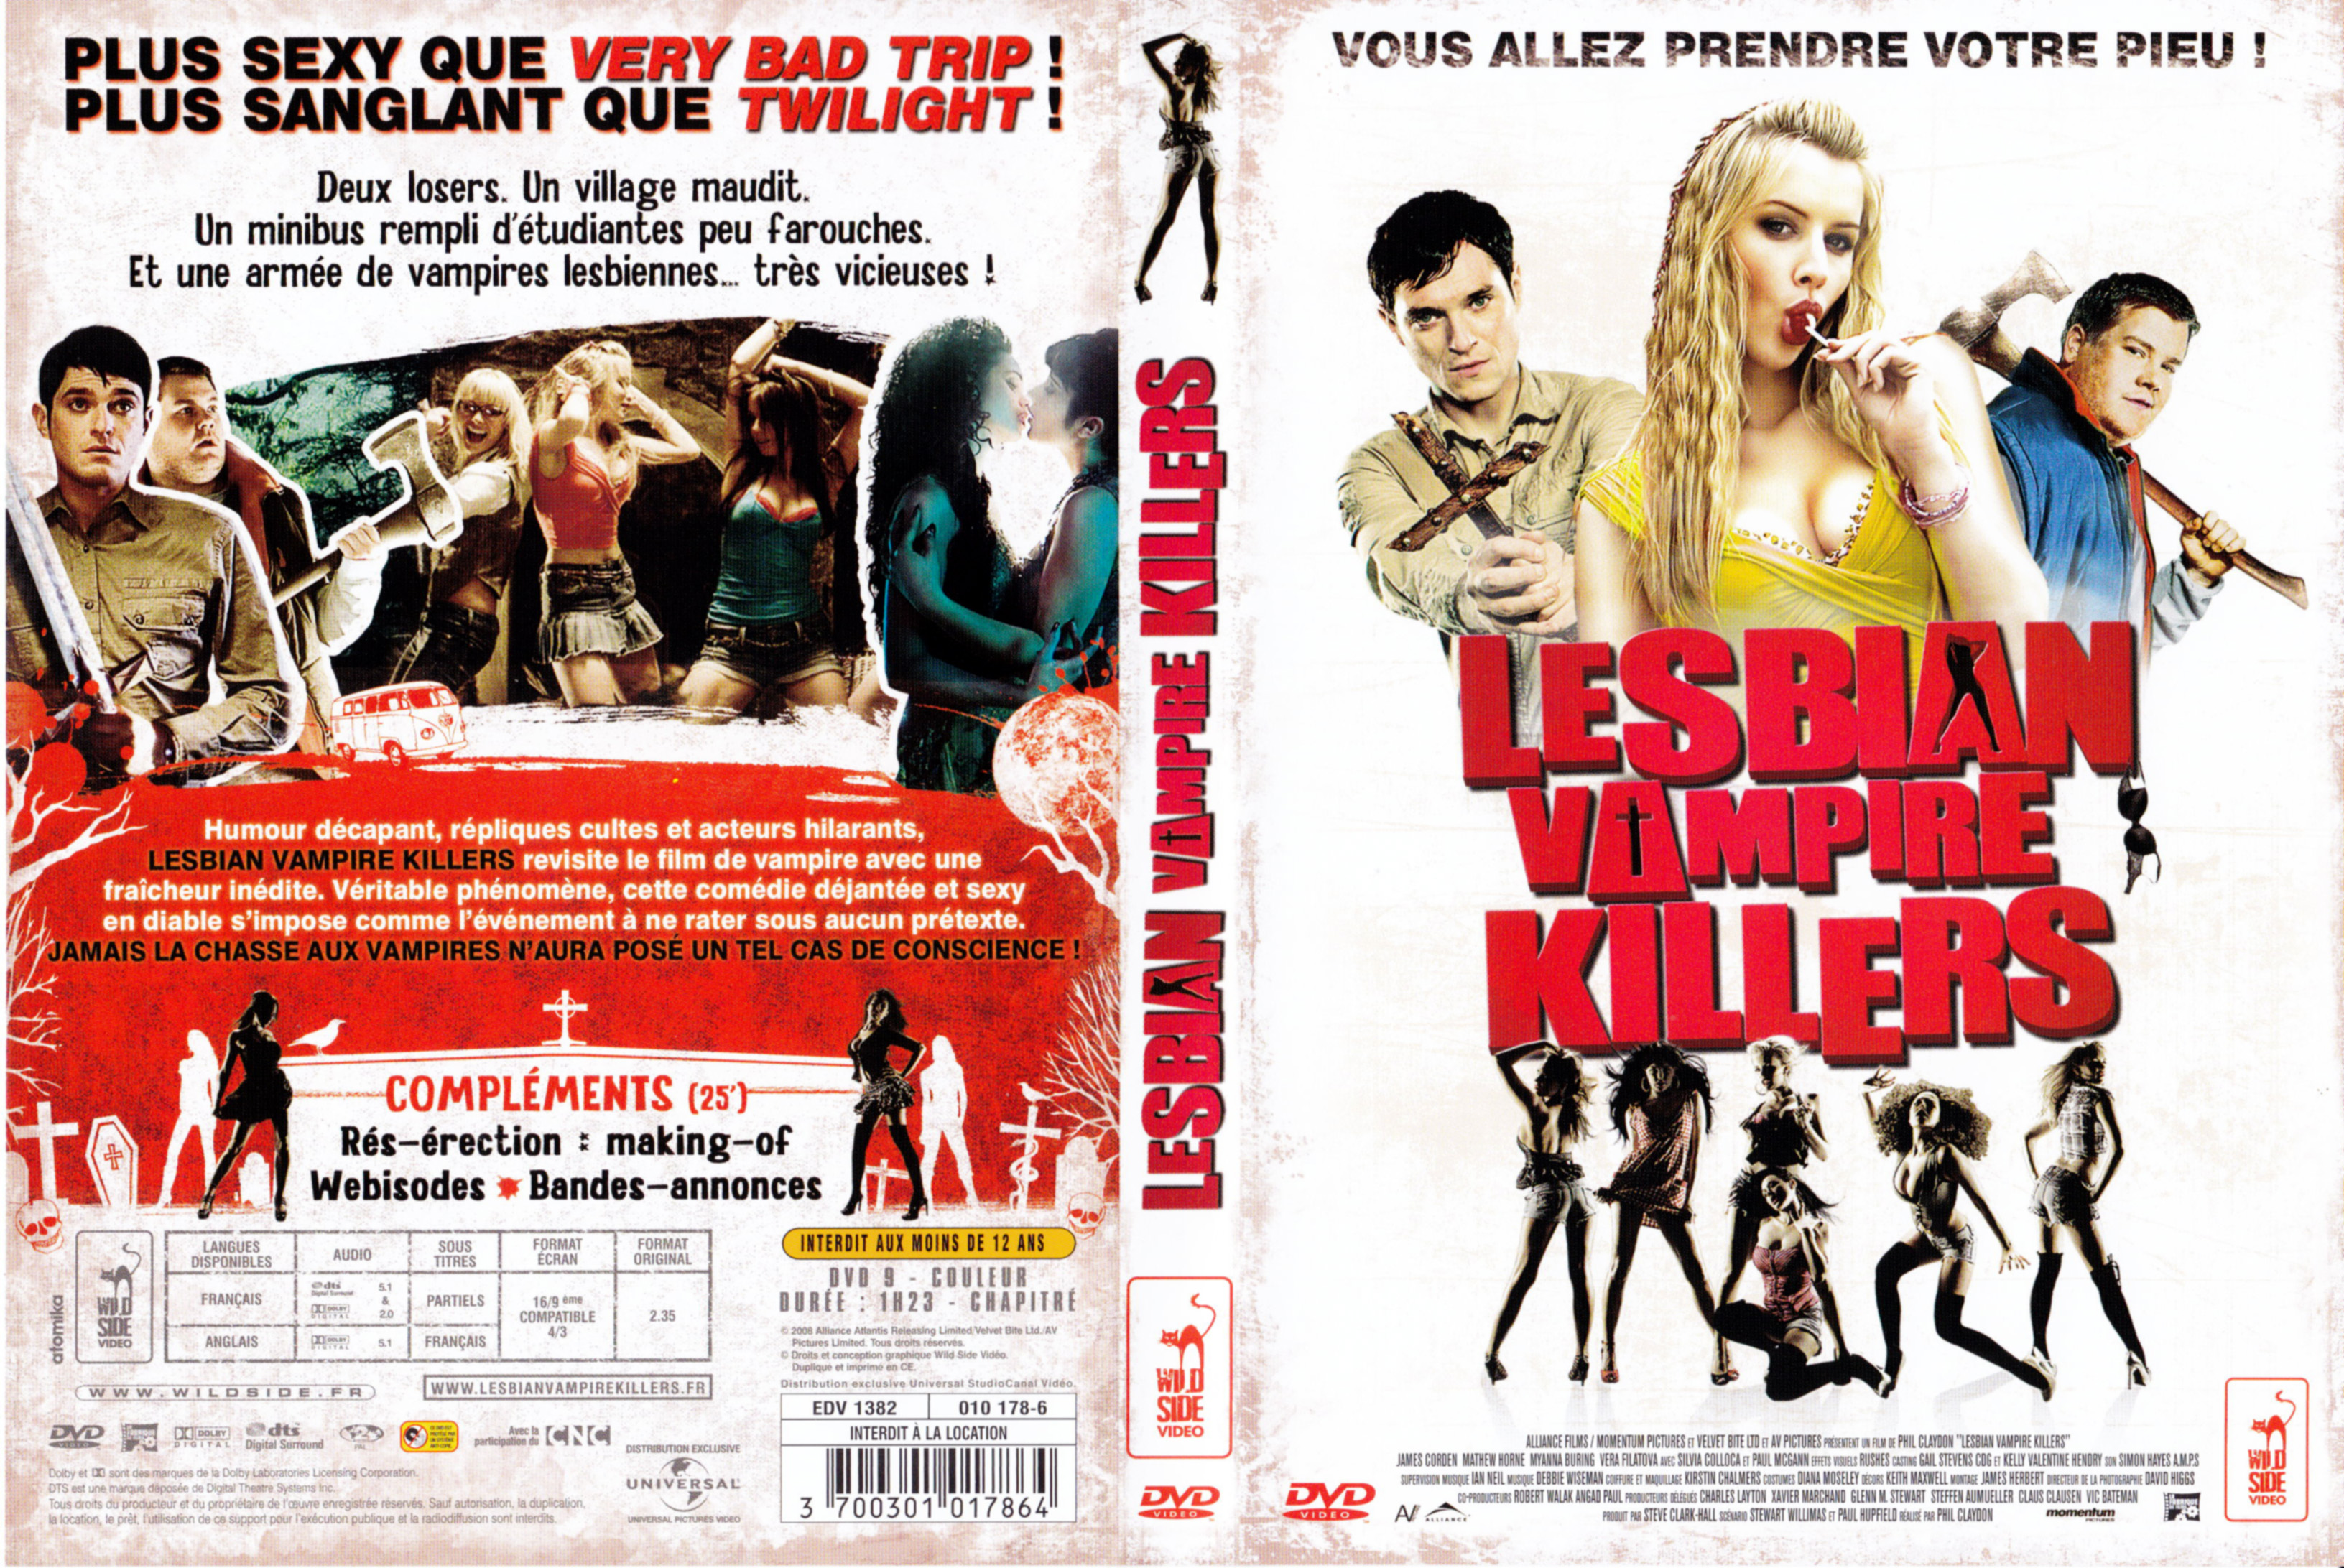 Jaquette Dvd De Lesbian Vampire Killers Cinéma Passion